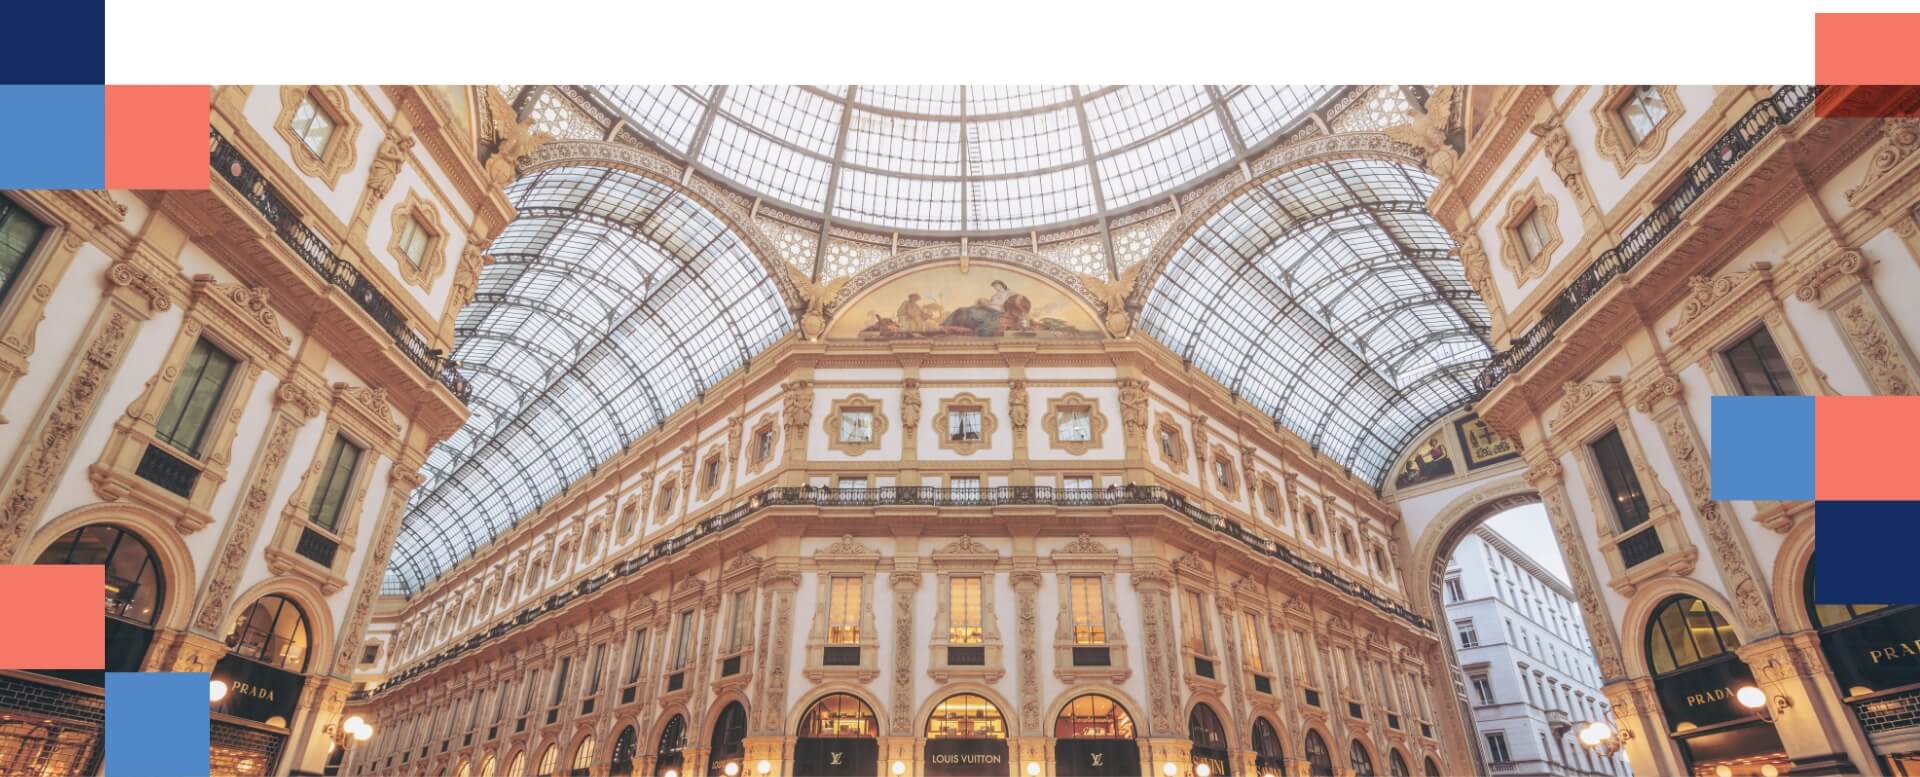 Dentro da Galleria Vittorio Emanuele II em Milão